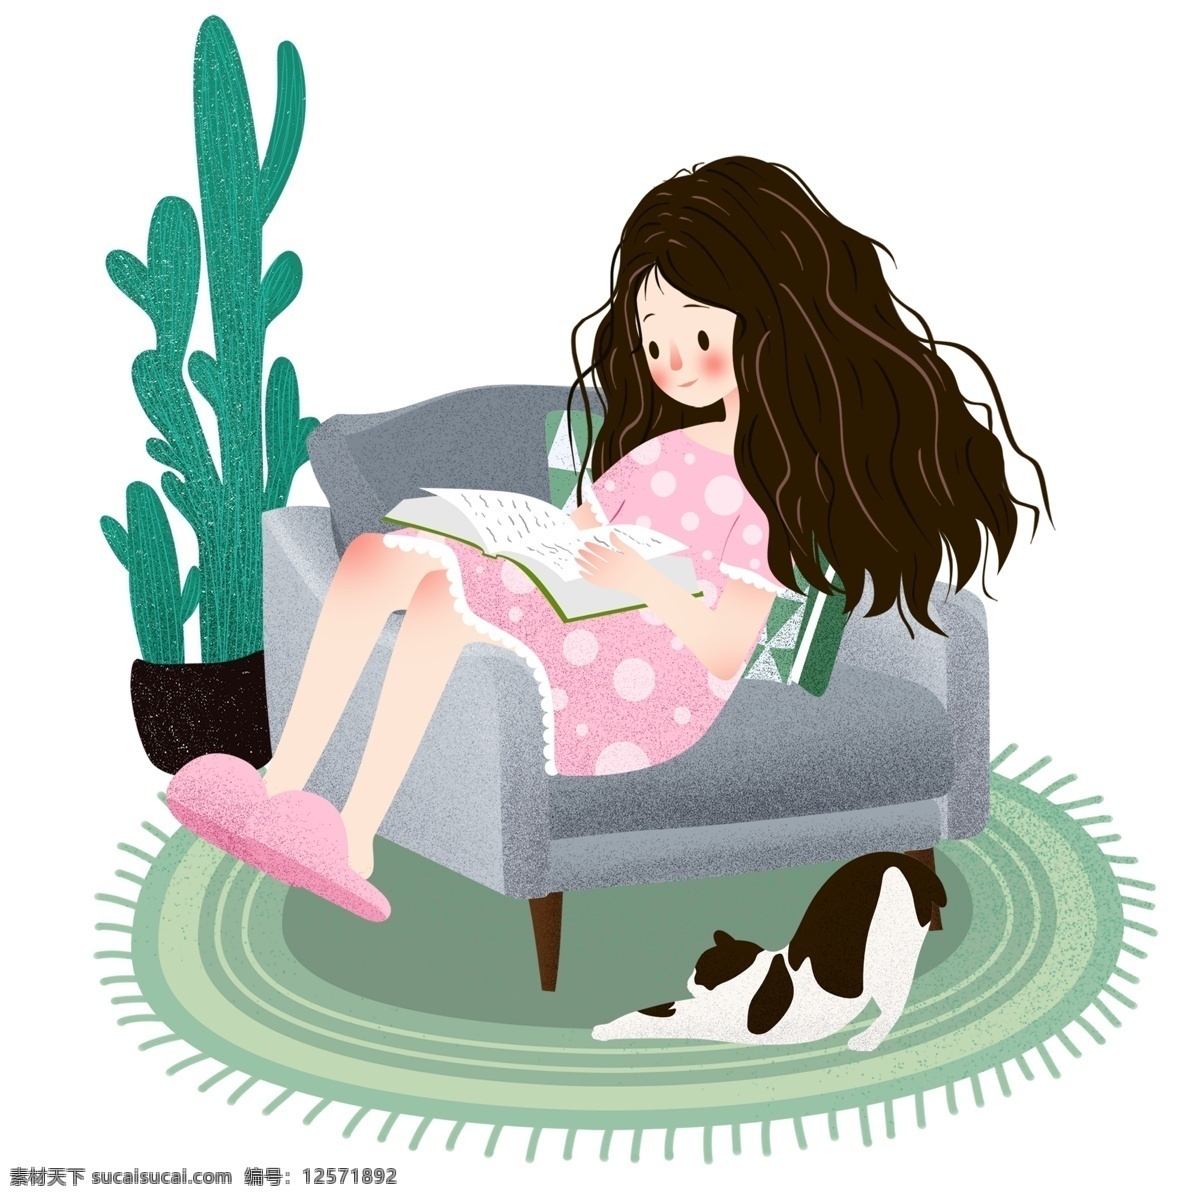 六一儿童节 童年 回忆 插画 手绘 沙发 猫 女孩 坐姿 看书 可爱 夏天 地毯 仙人掌